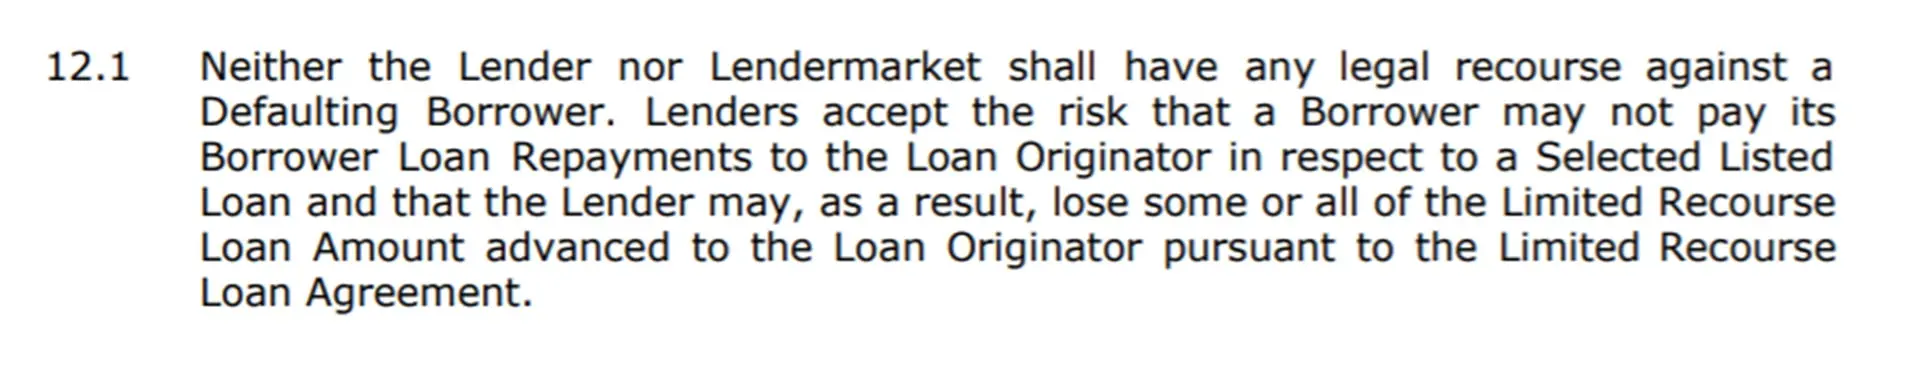 lendermarket-terms